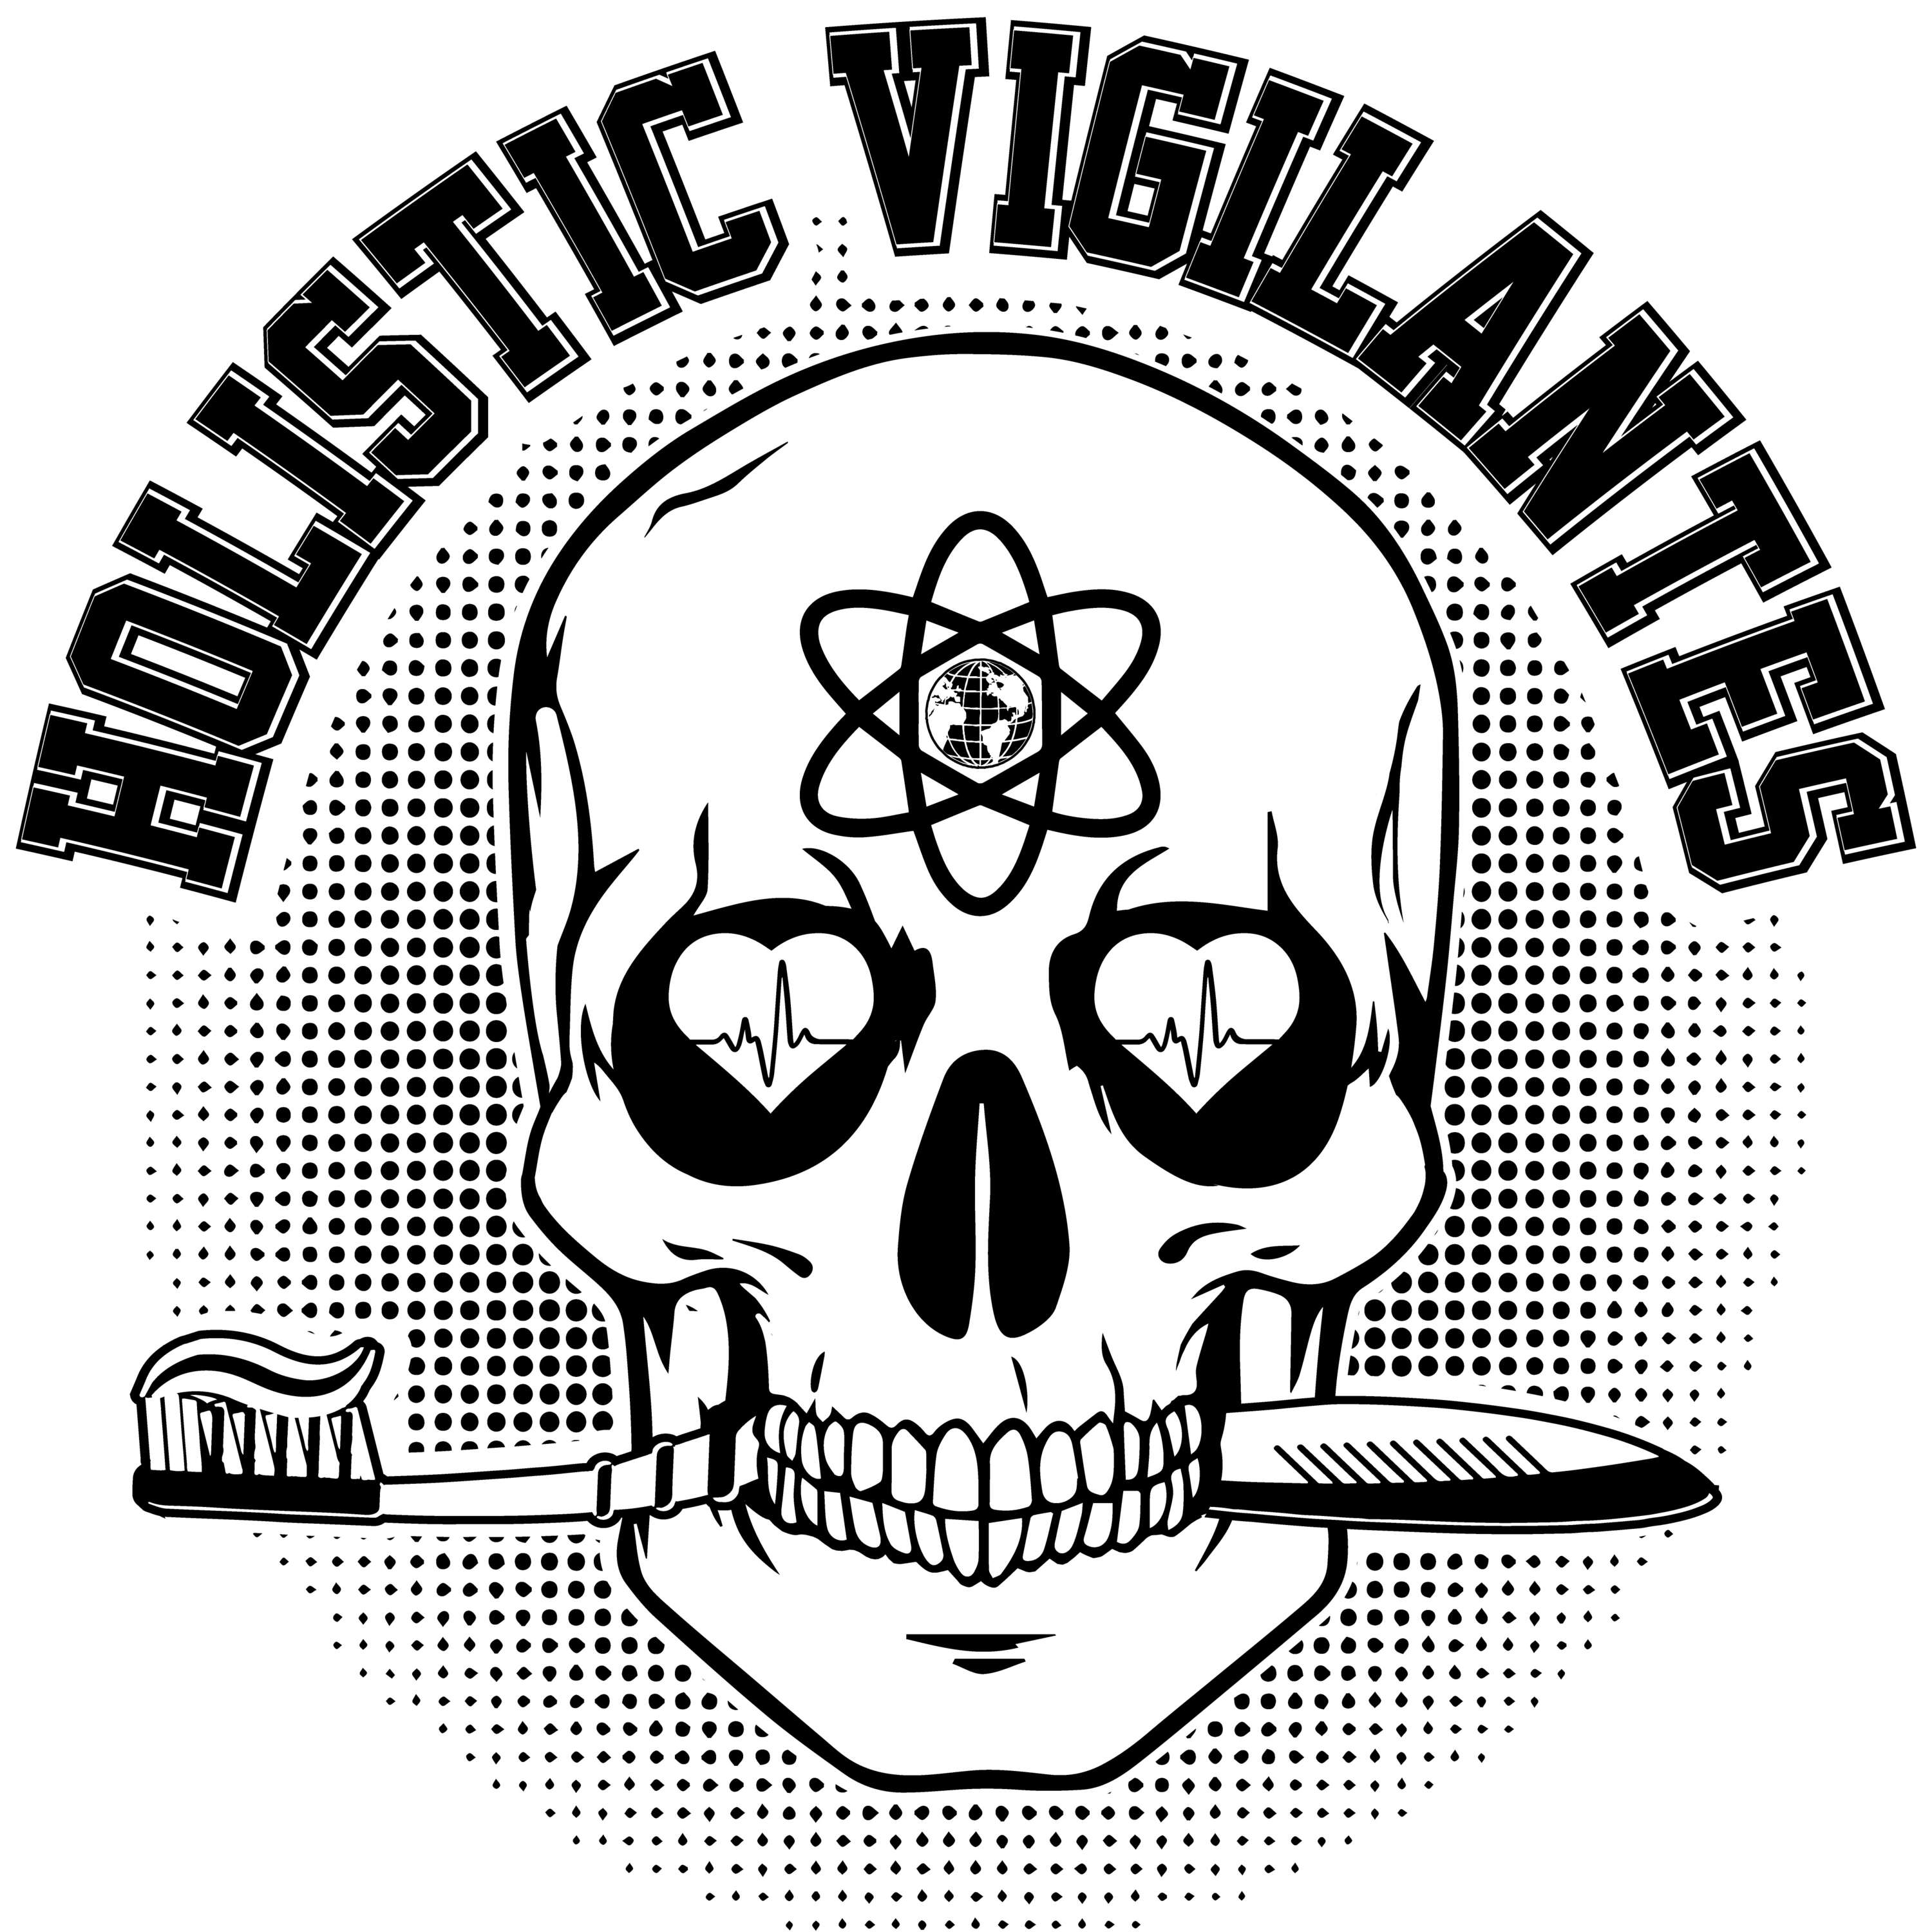 Holistic Vigilantes